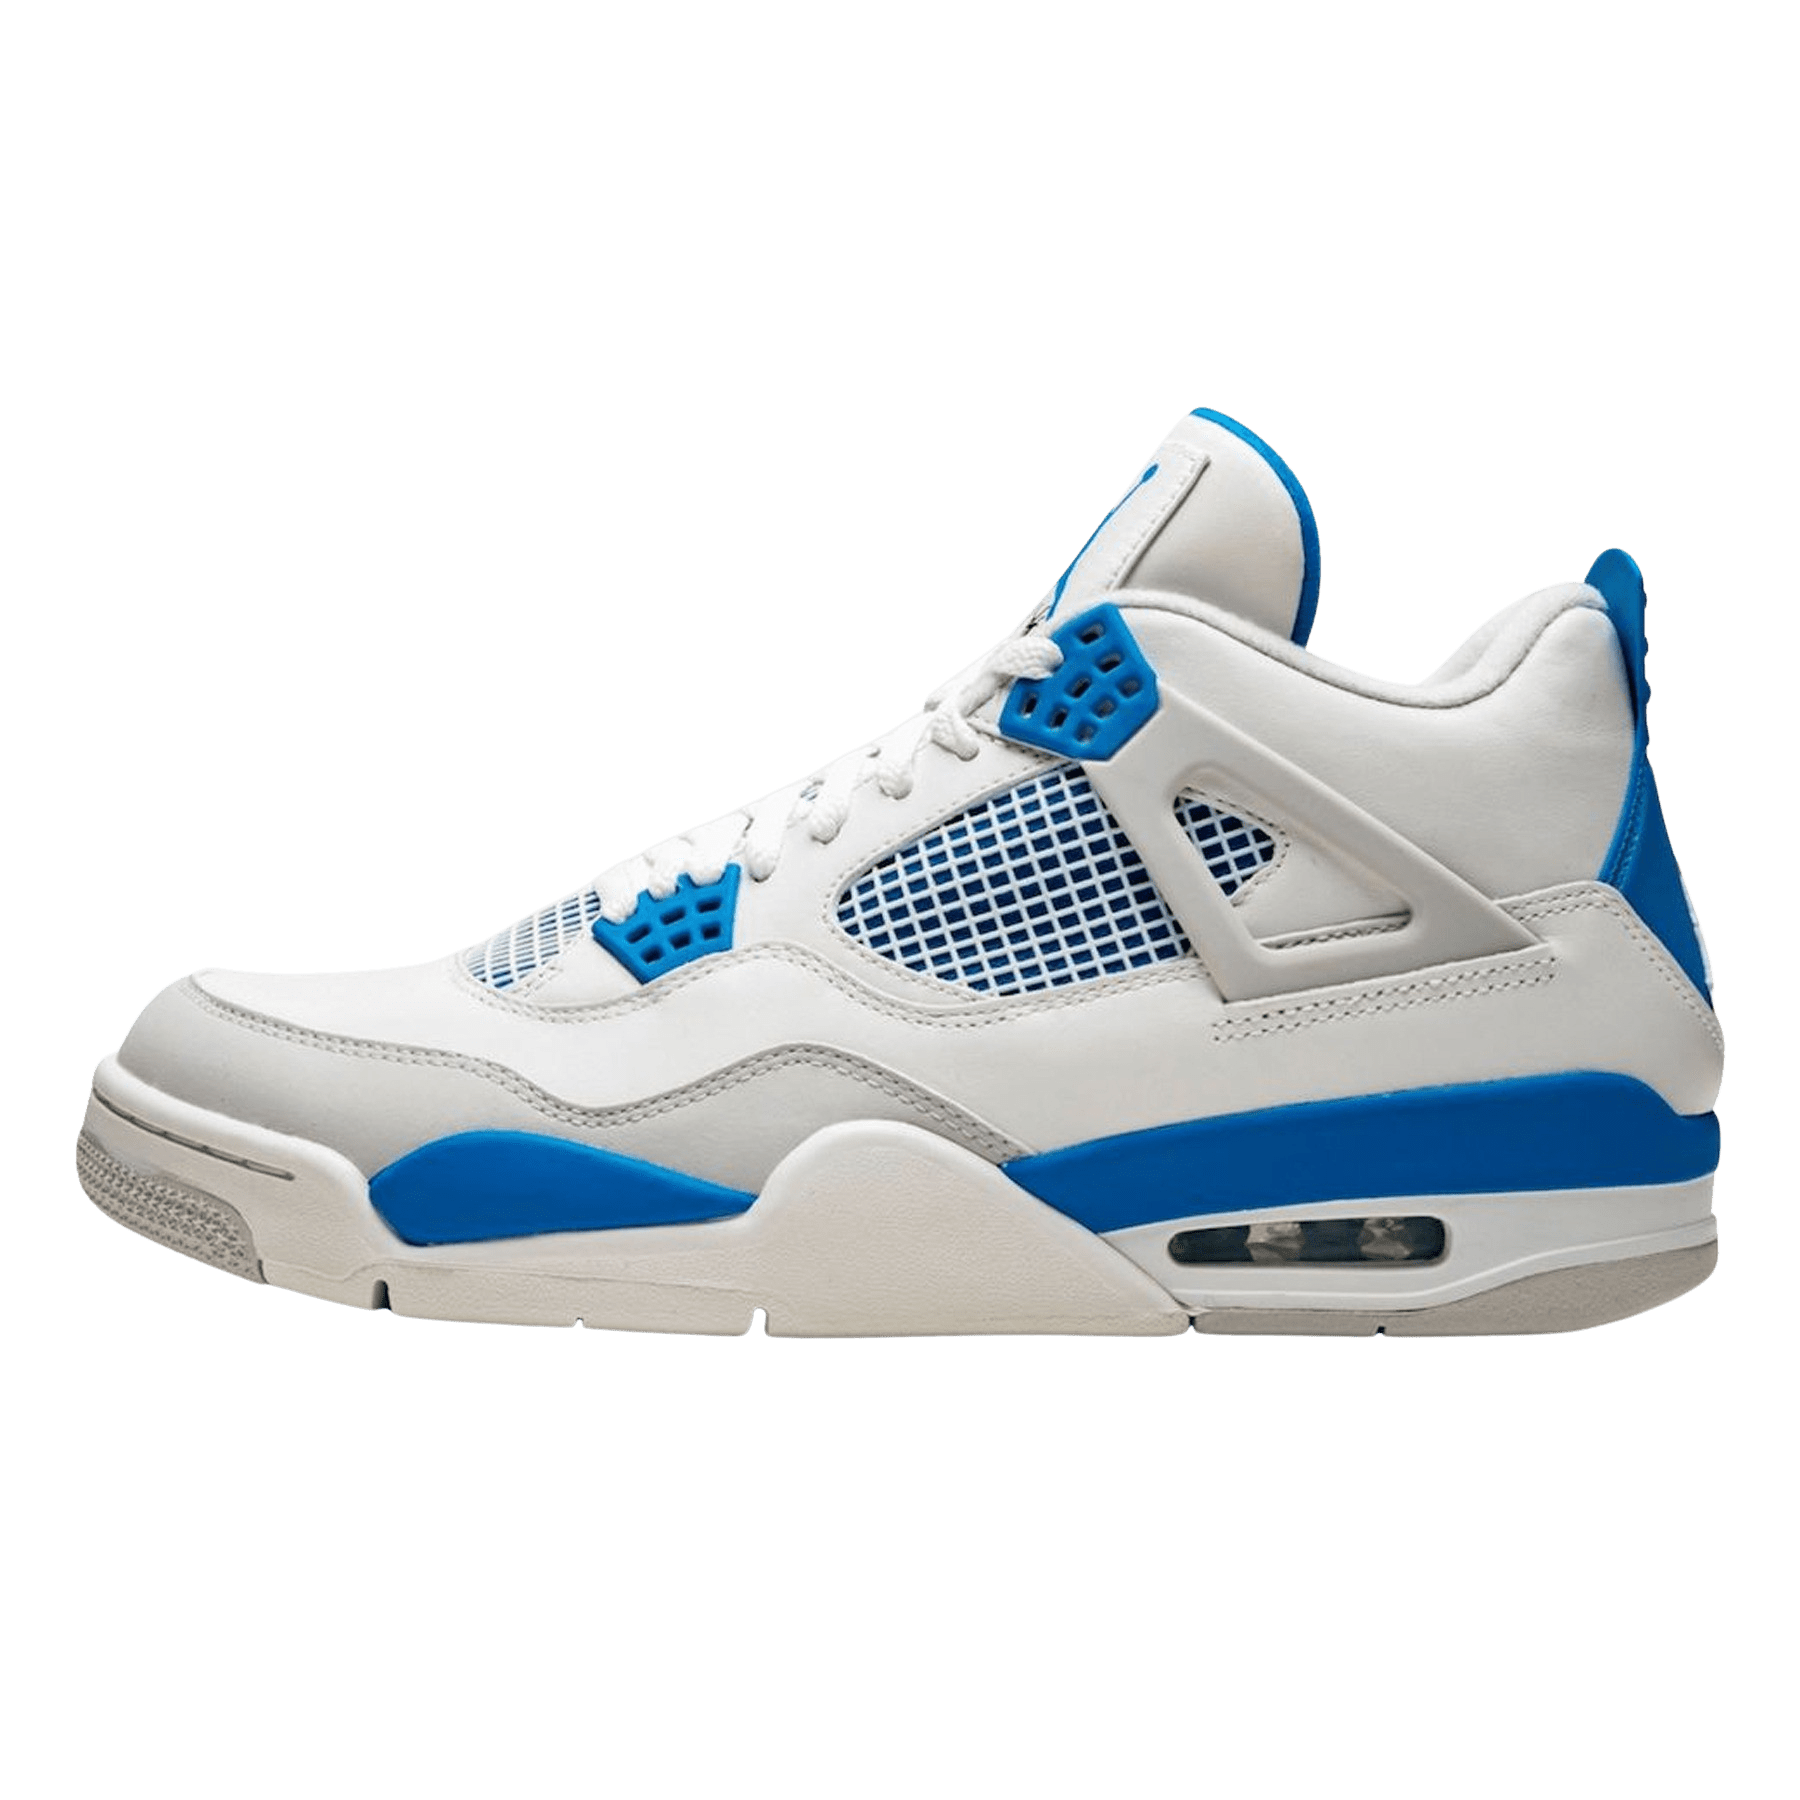 Air Jordan 4 Retro White Military Blue 308497 105